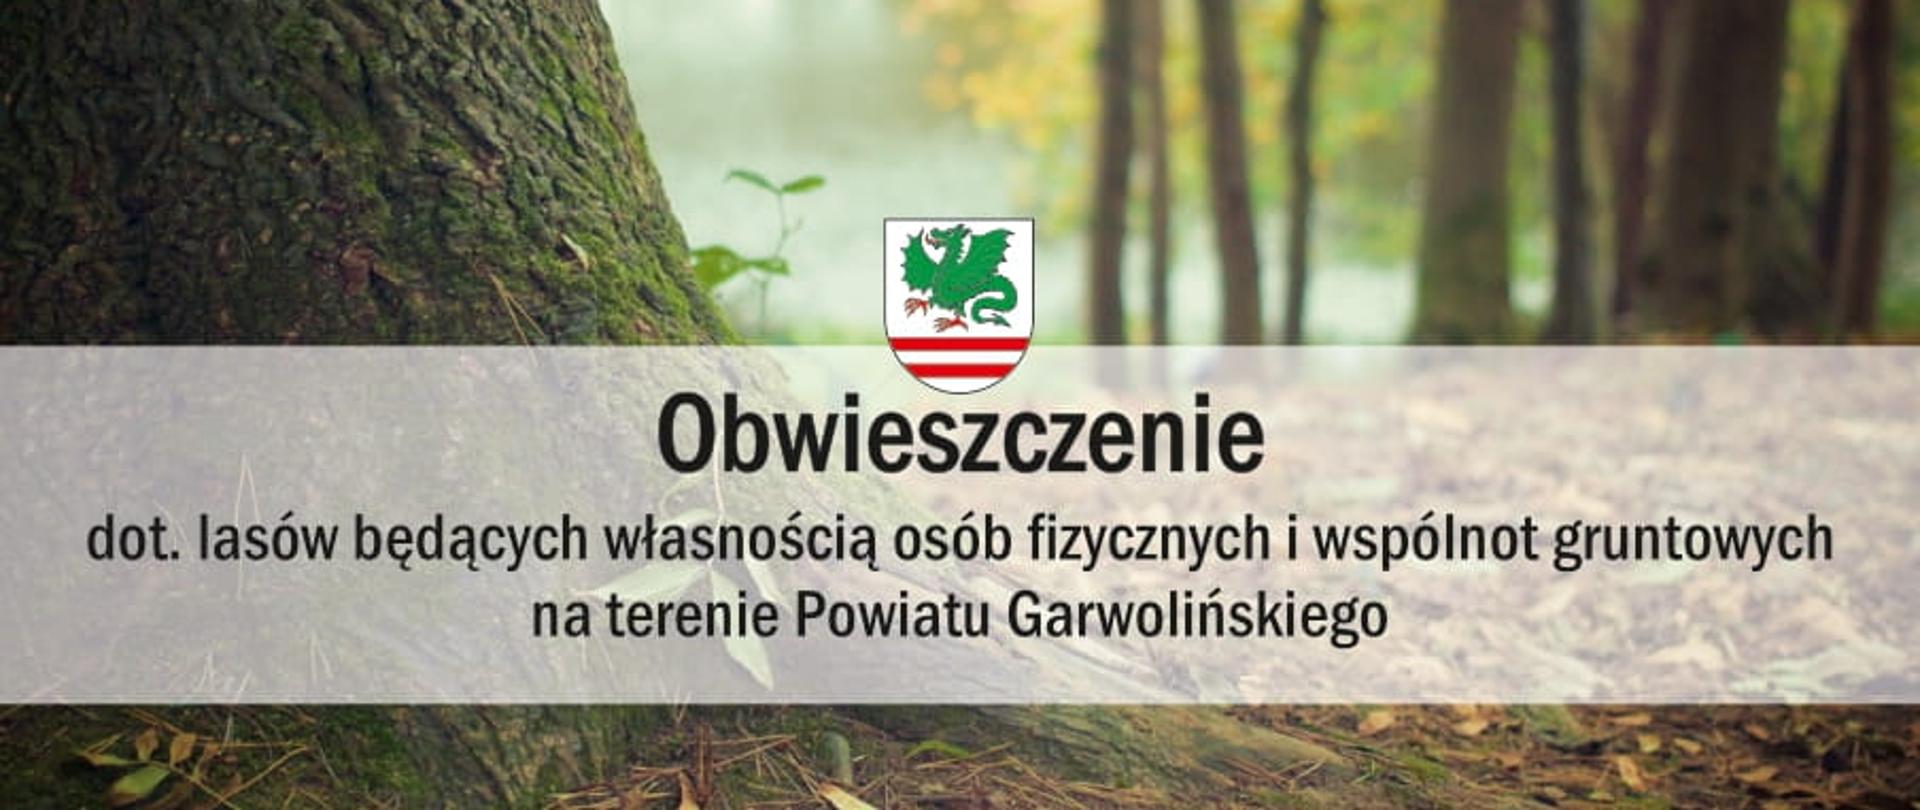 Obwieszczenie dot. lasów będących własnością osób fizycznych i wspólnot gruntowych na terenie Powiatu Garwolińskiego 